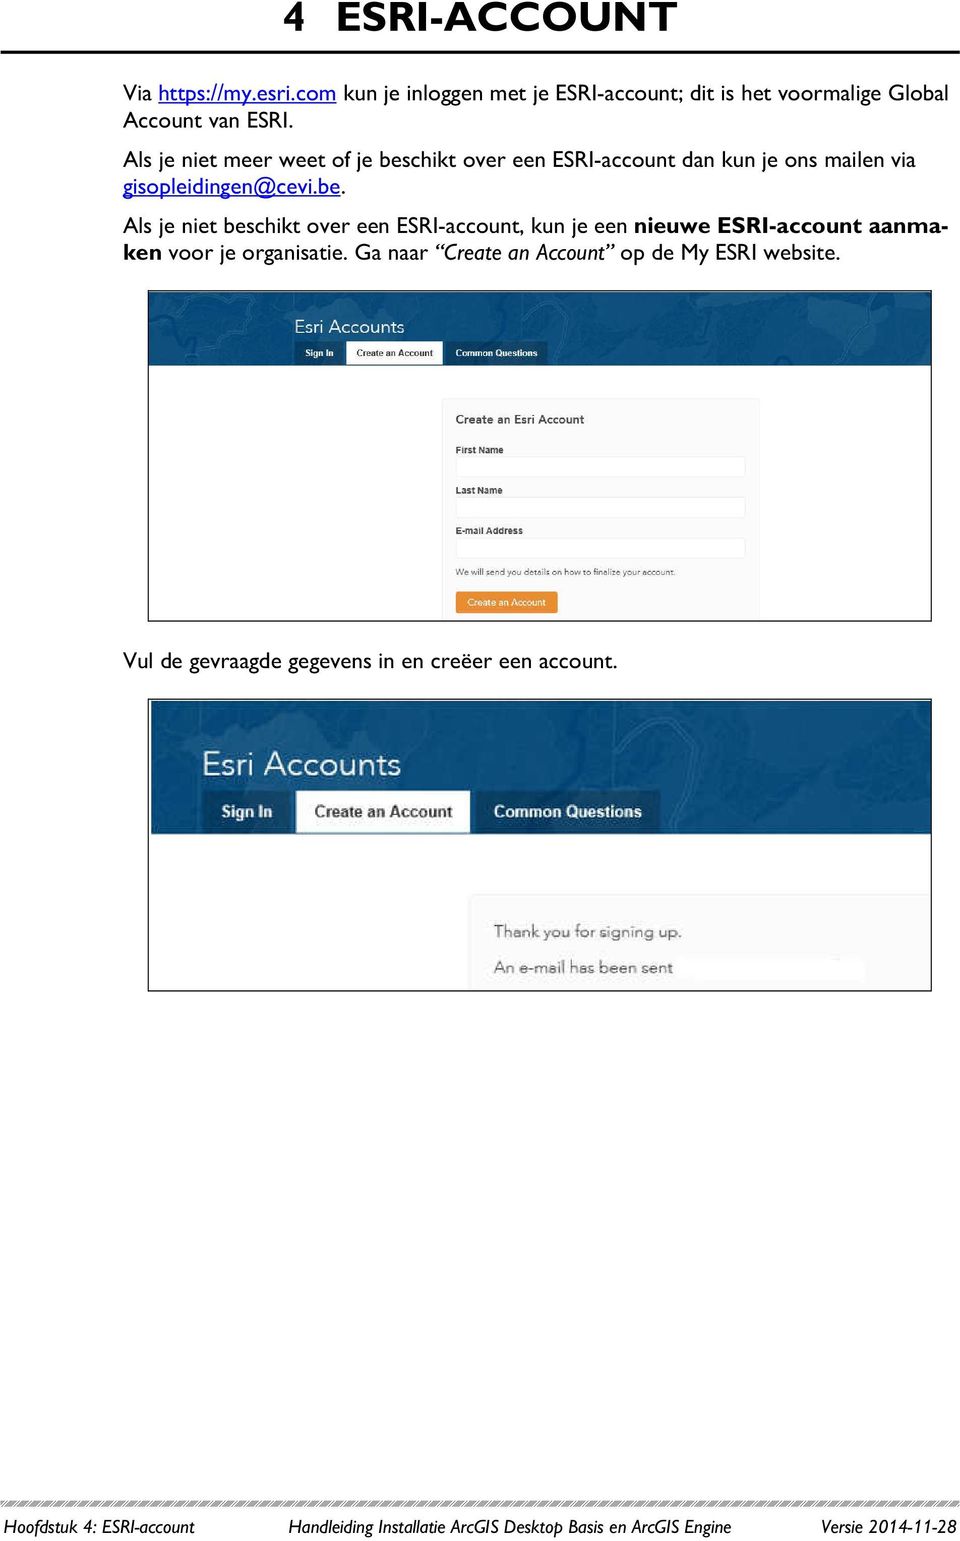 Ga naar Create an Account op de My ESRI website. Vul de gevraagde gegevens in en creëer een account.